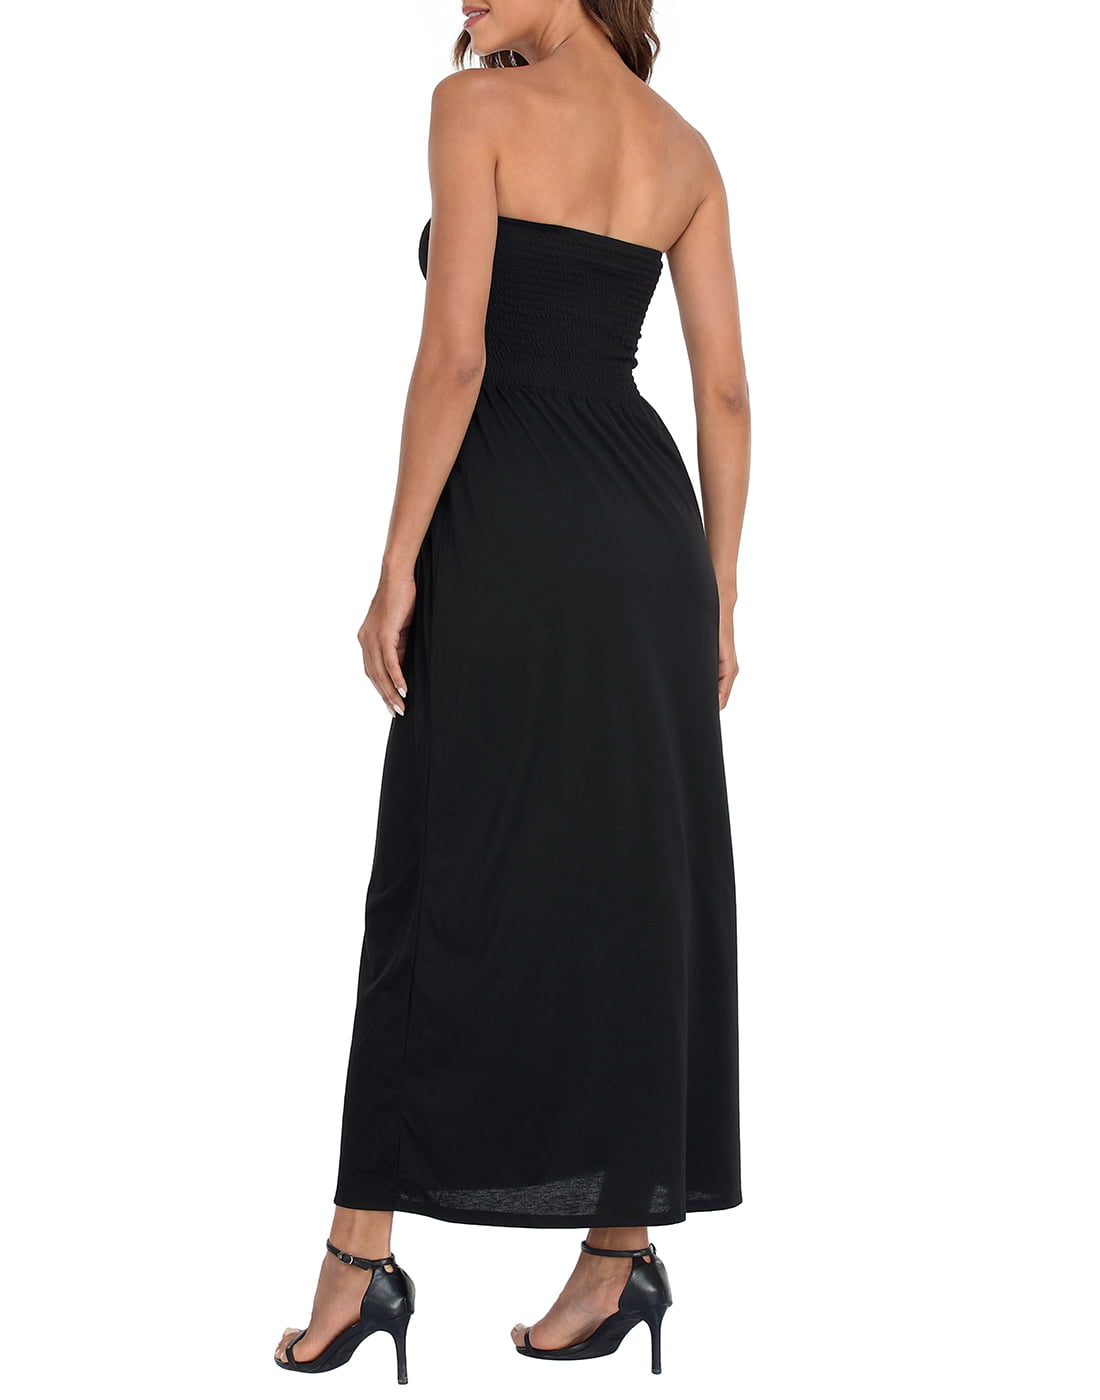 HDE Women's Strapless Maxi Dress Plus Size Tube Top Long Skirt Sundress  Cover Up Black 4X 